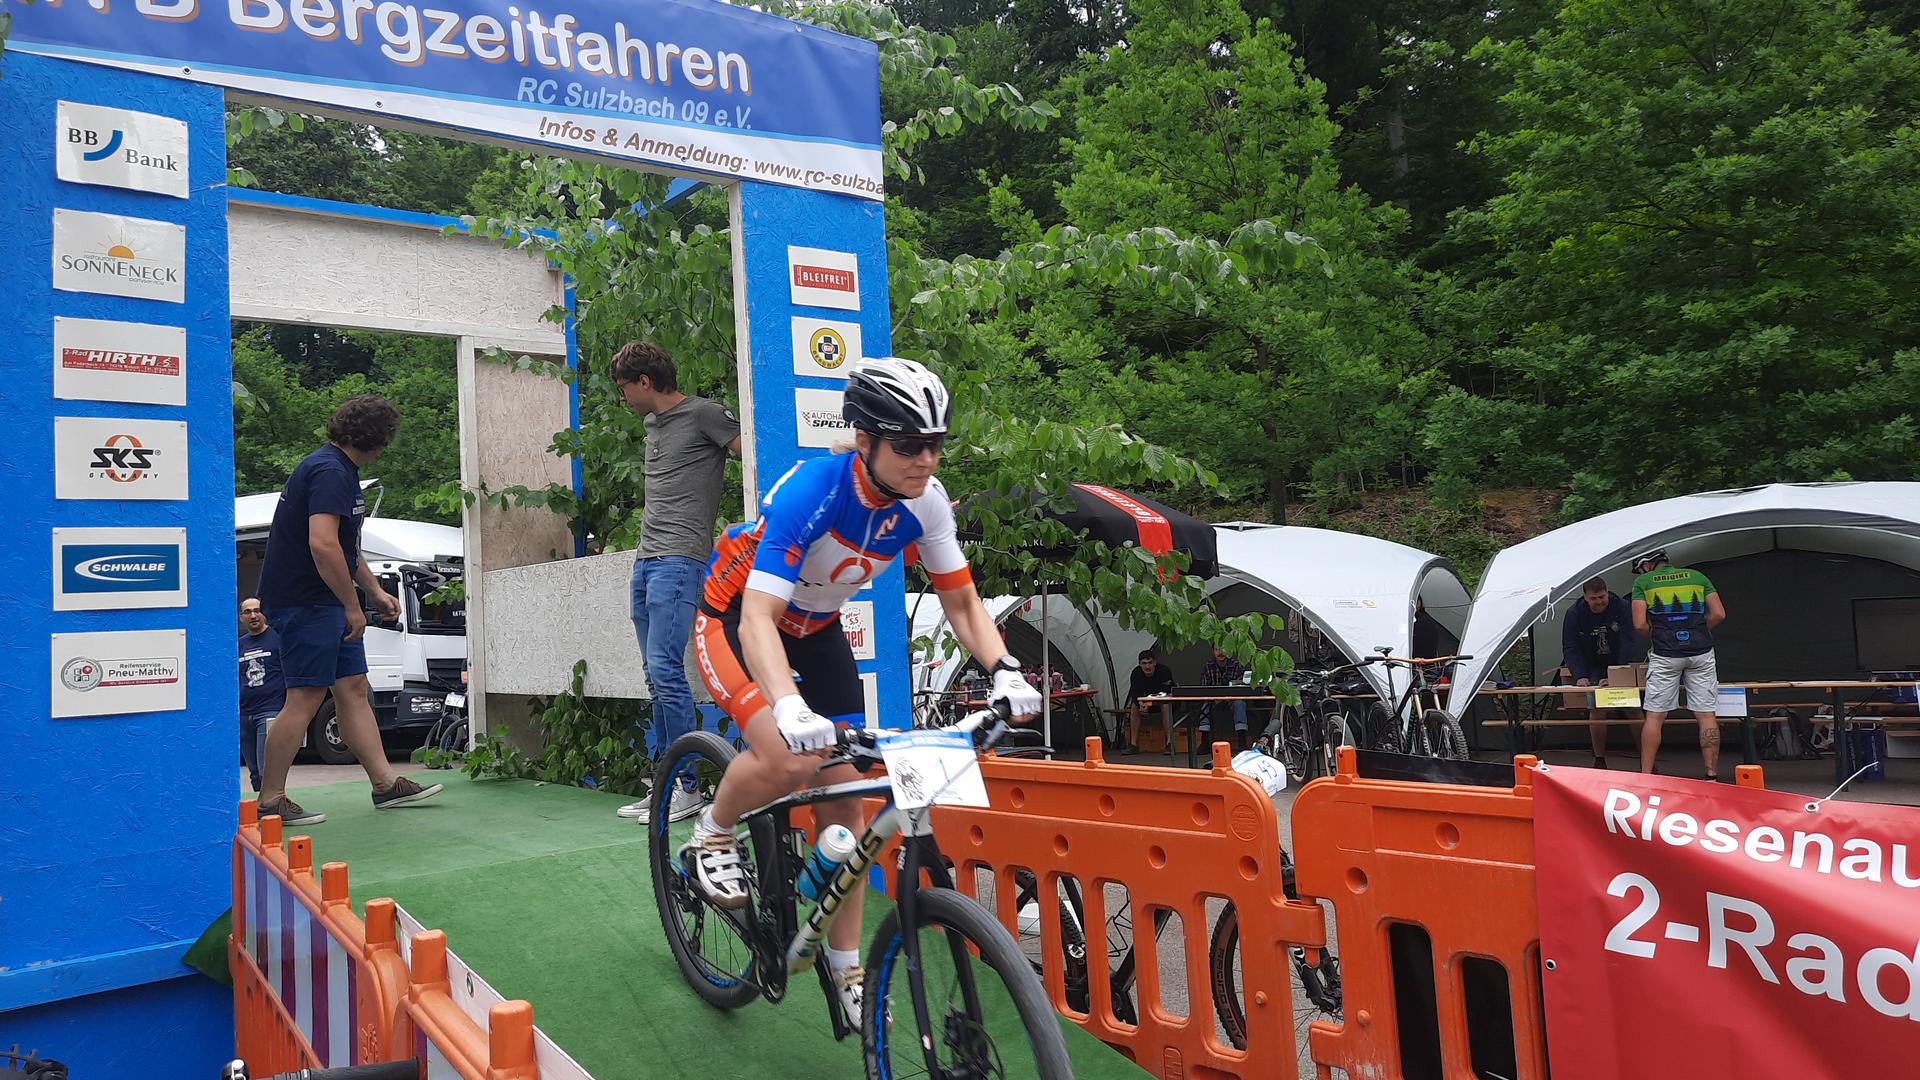 Iris Weiss startet mit dem Mountainbike beim Bergzeitfahren des RC Sulzbach.